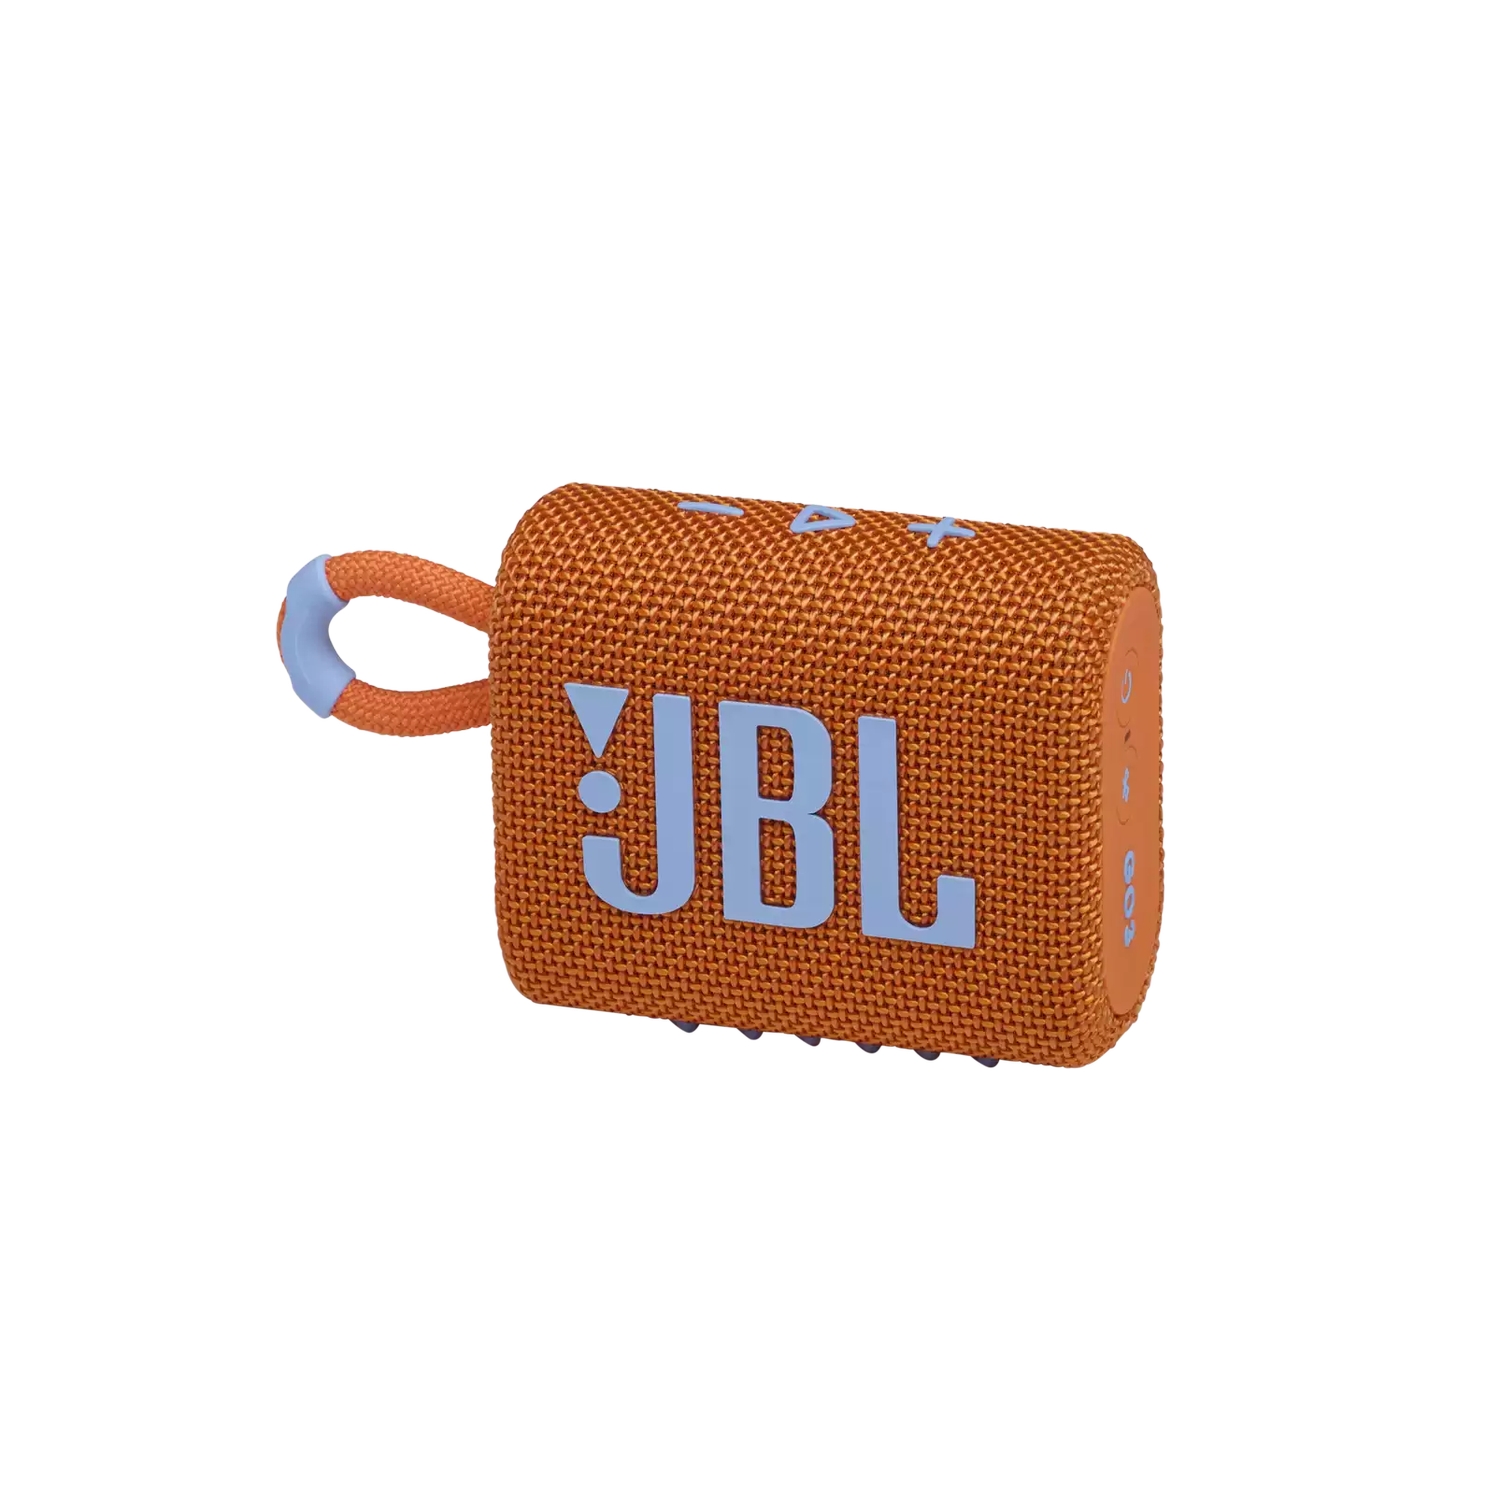 Портативная акустика JBL GO 3 оранжевая портативная акустика jbl go 3 white